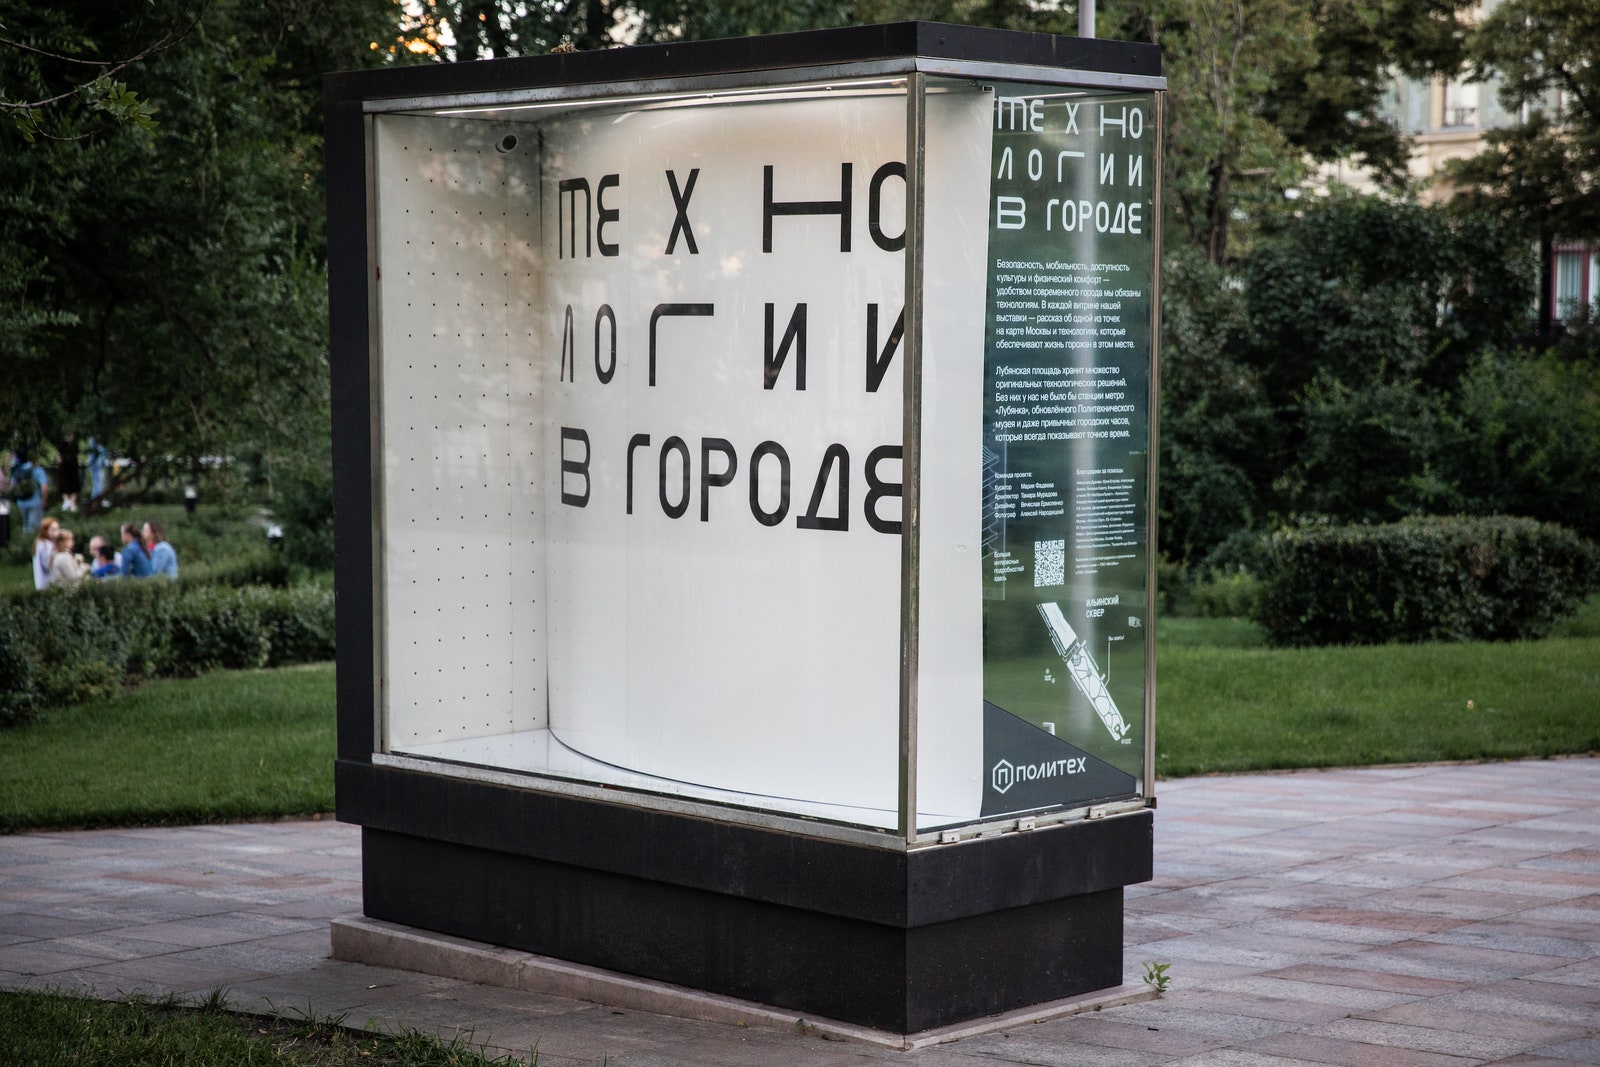 “Технологии в городе” выставка Политехнического музея в Ильинском сквере